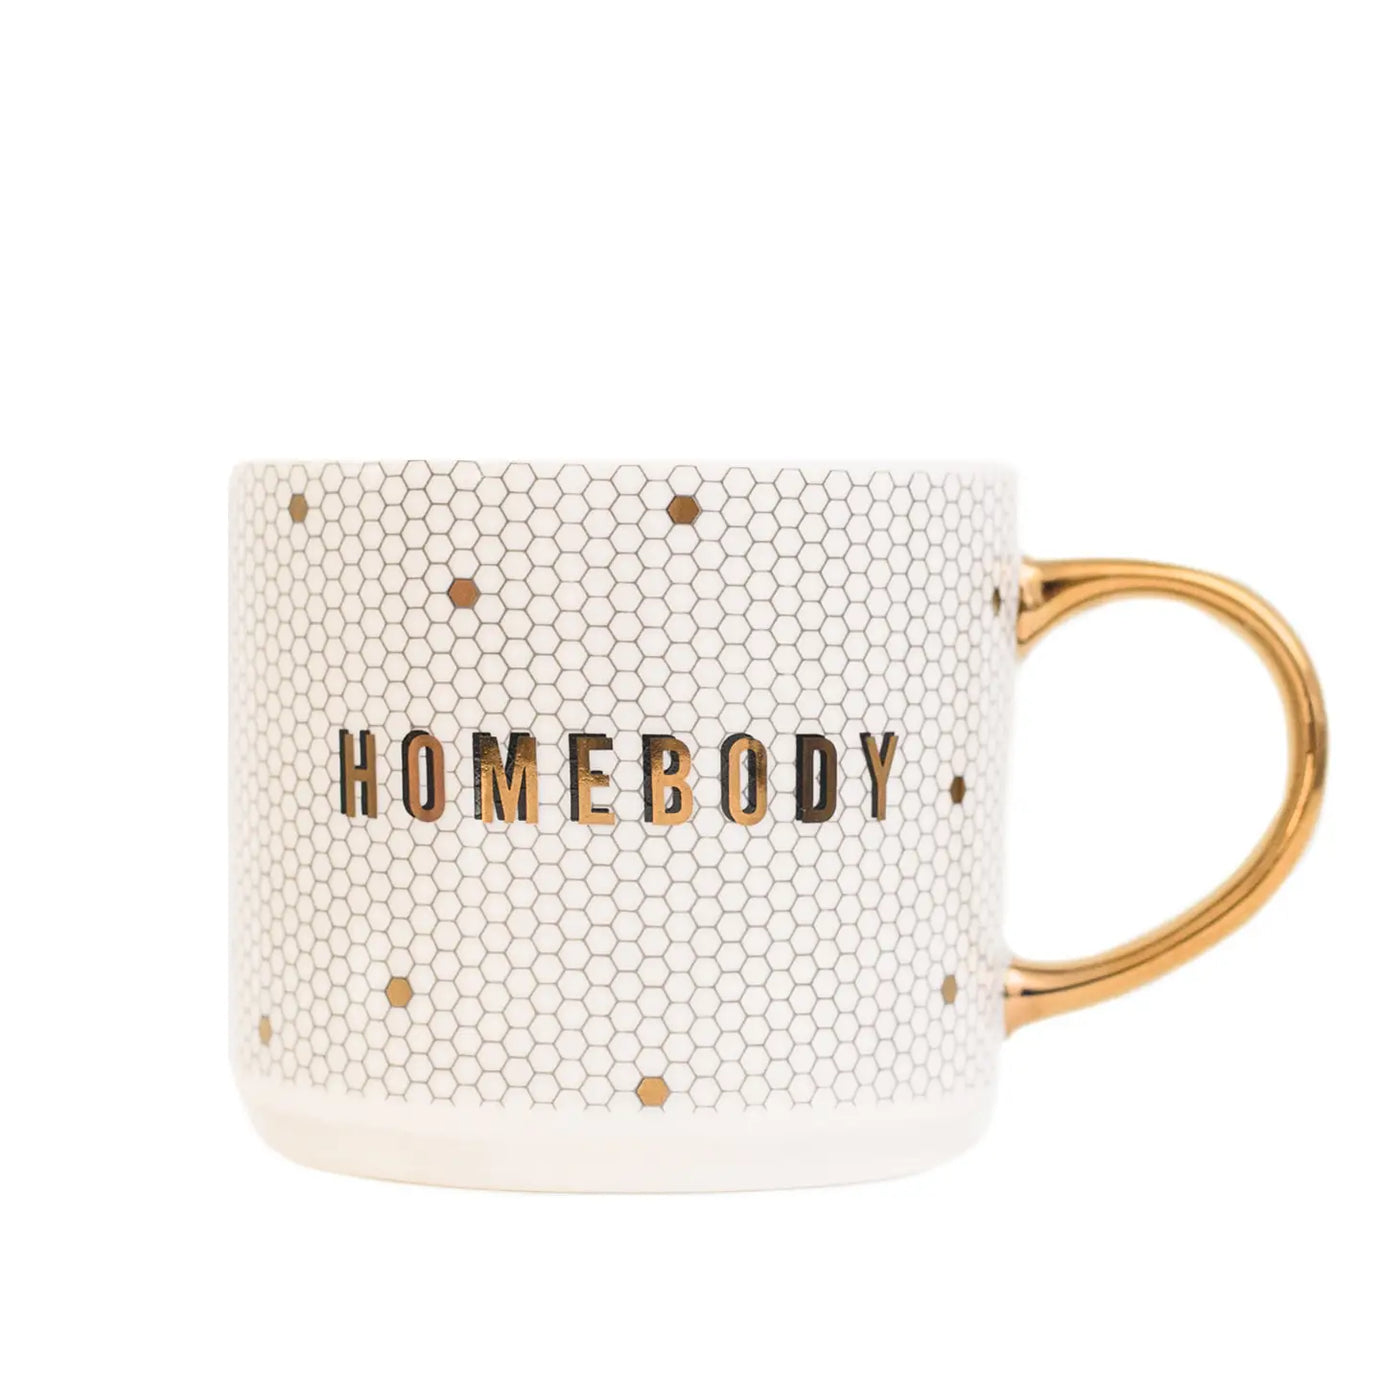 Homebody Coffee Mug 17oz